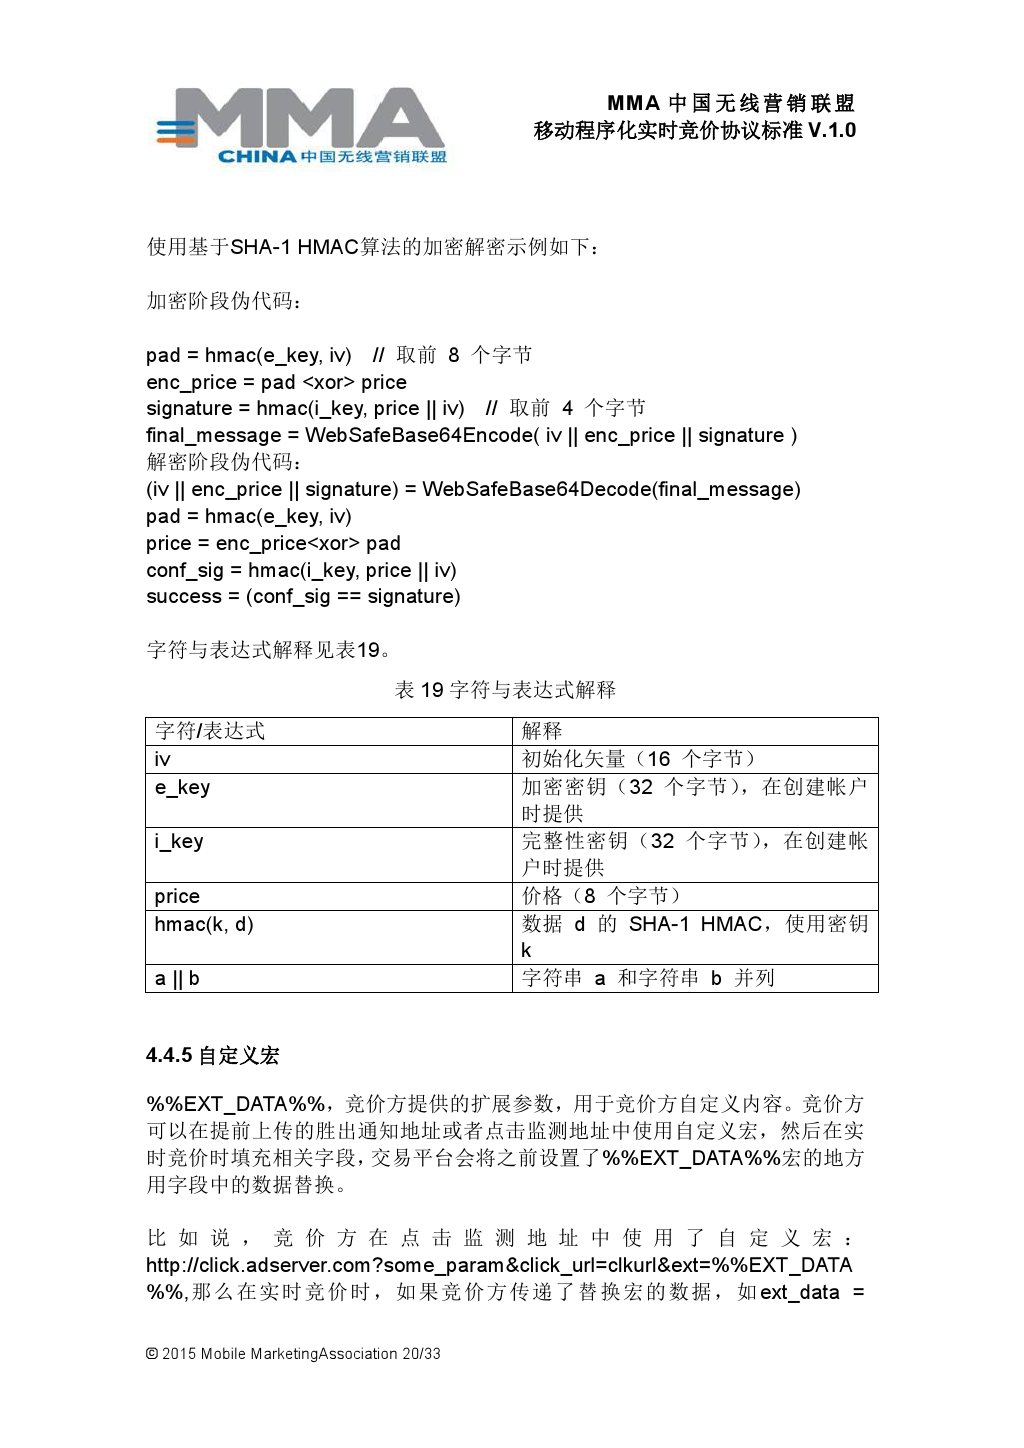 MMA中国无线营销联盟移动程序化实时竞价协议标准V.1.0_000021